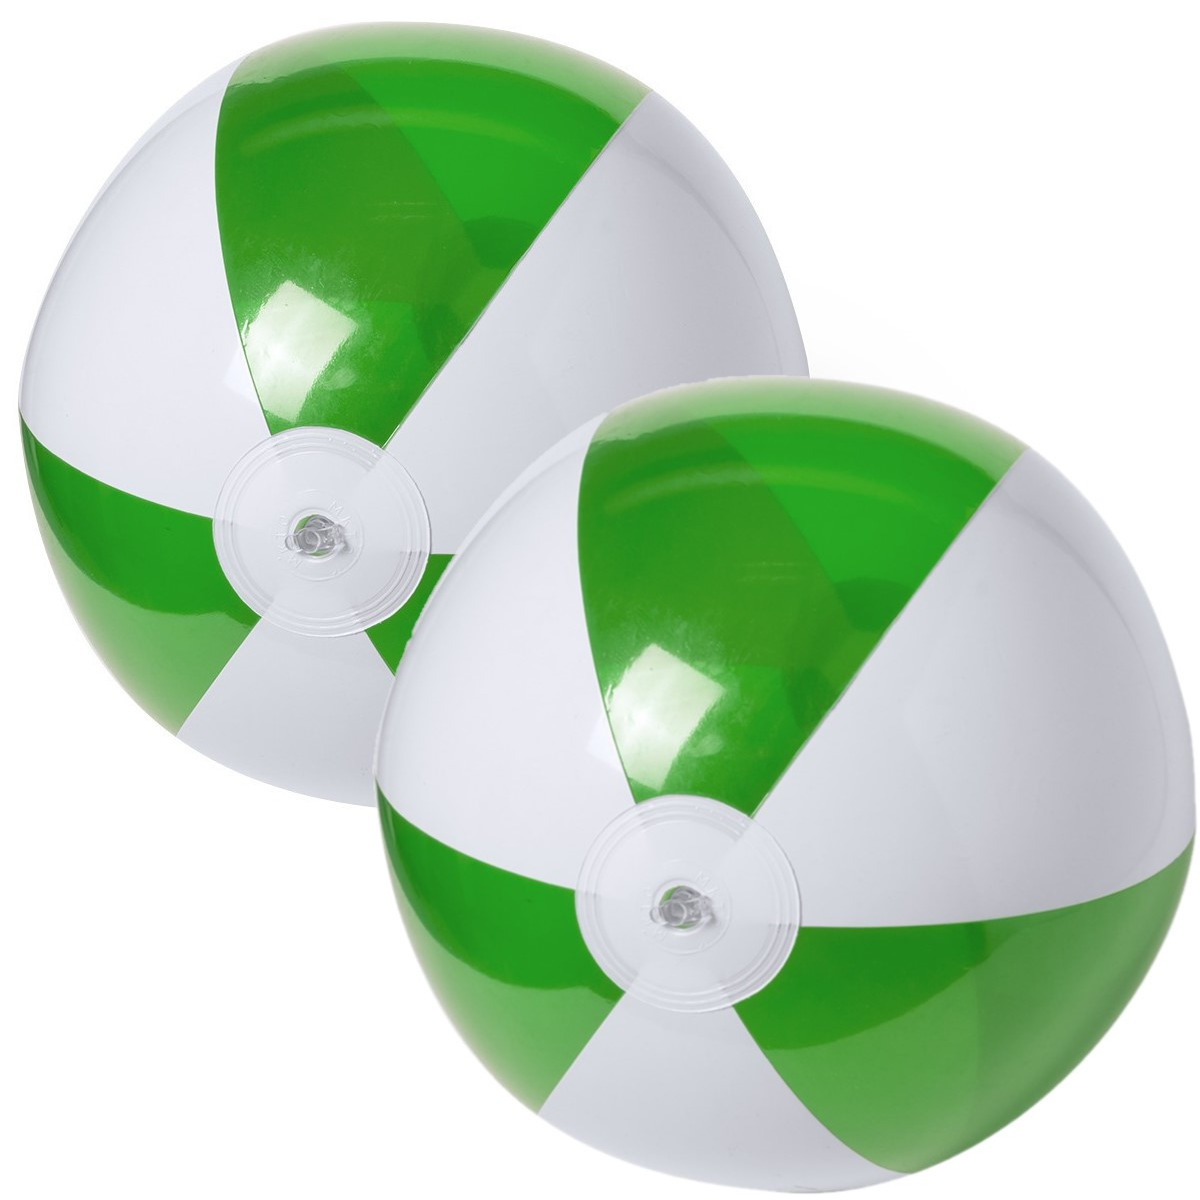 2x stuks opblaasbare strandballen plastic groen-wit 28 cm